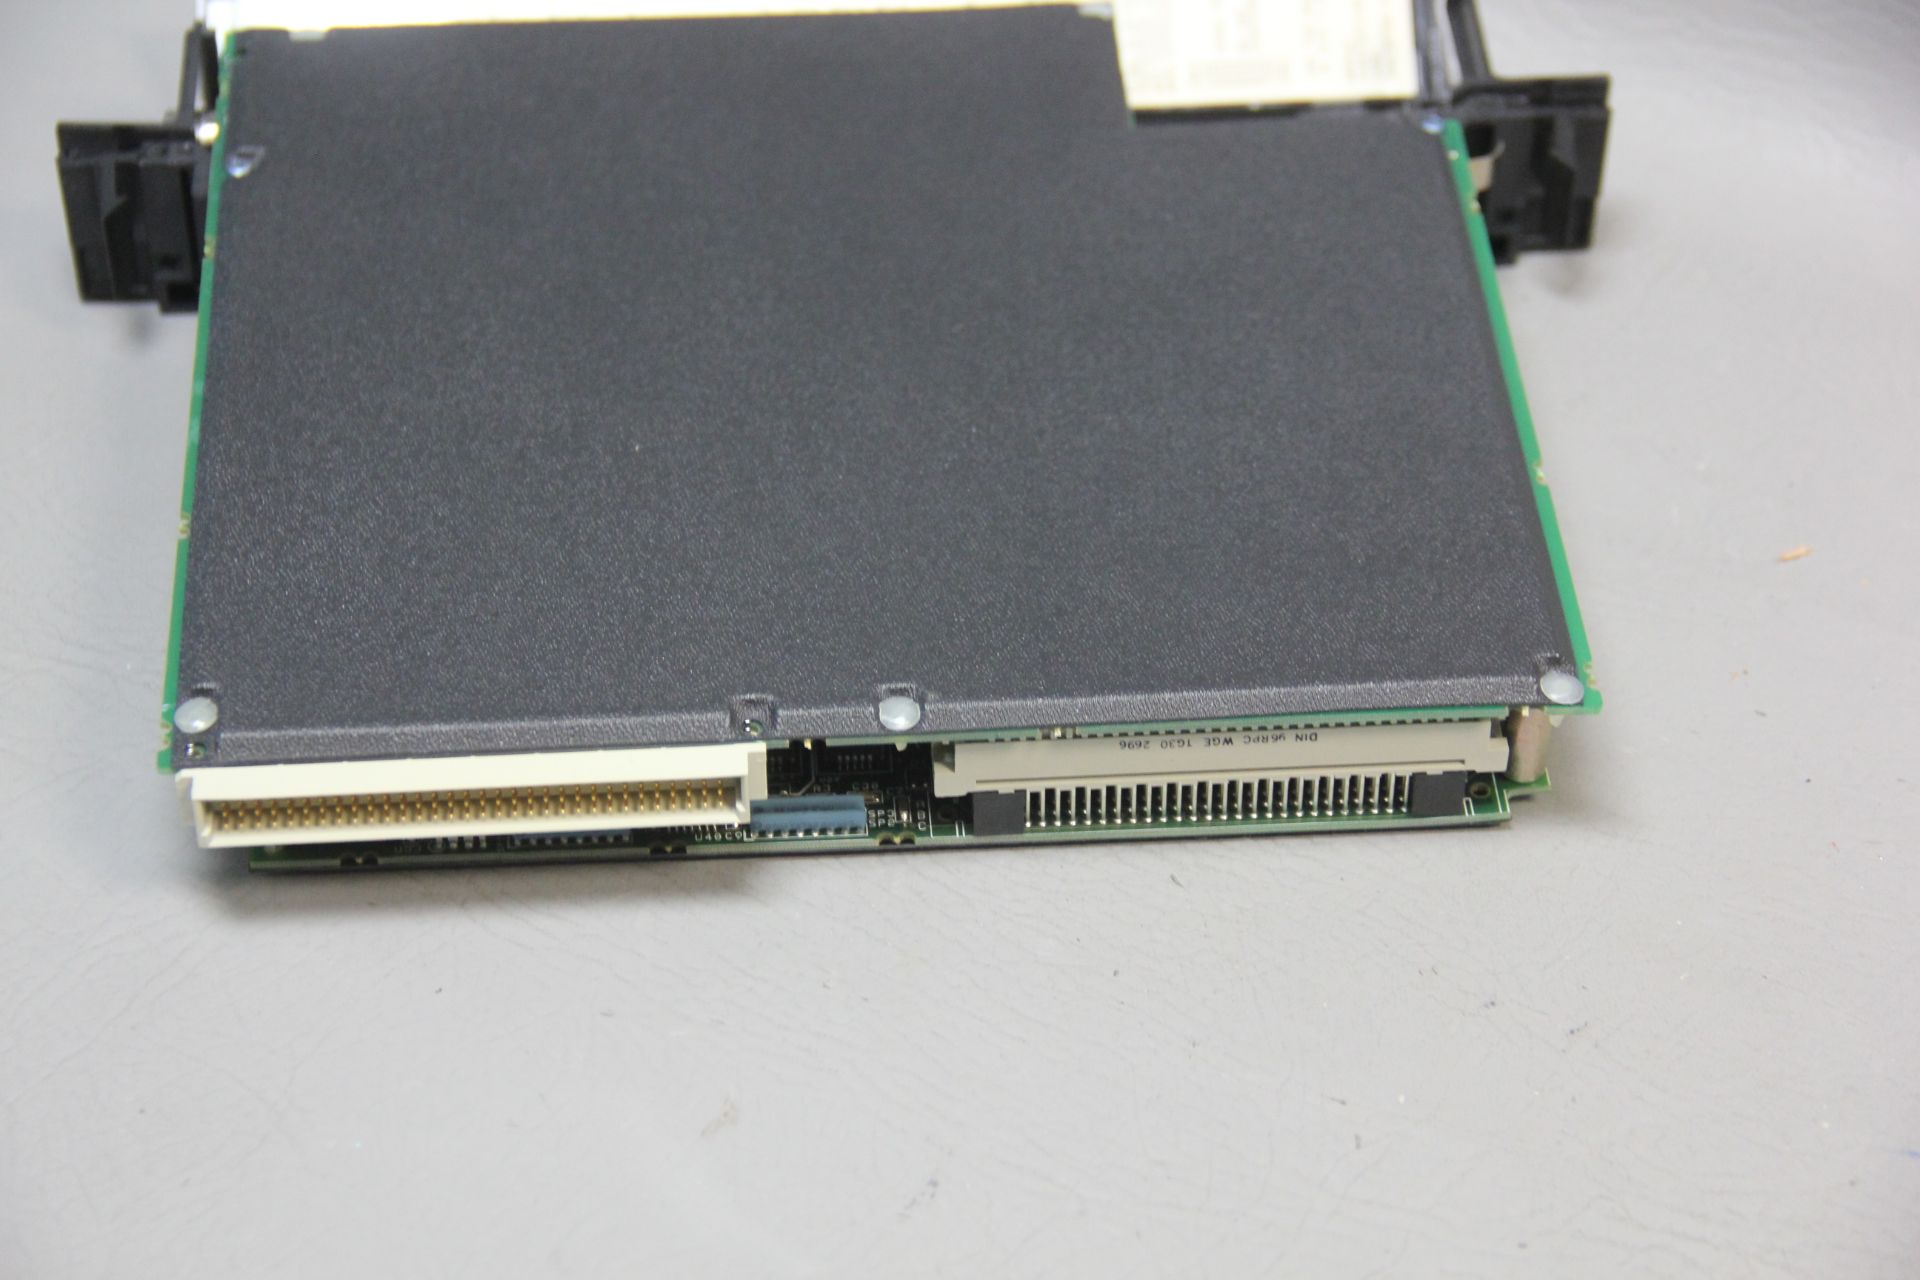 GE FANUC CPU PLC MODULE - Image 4 of 4